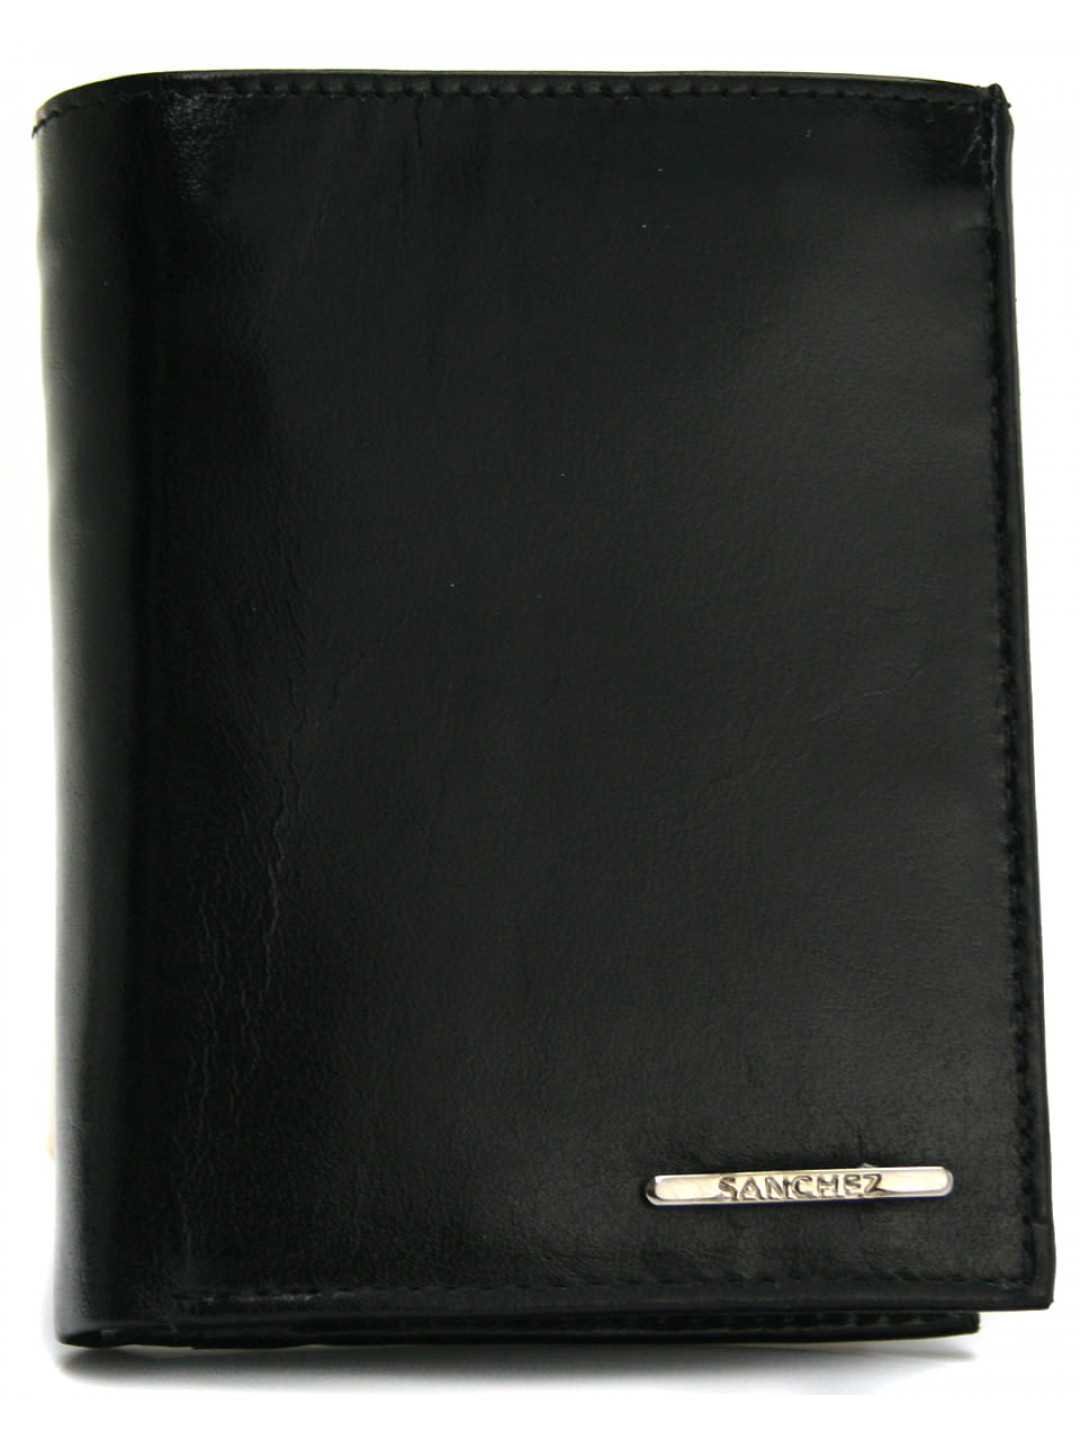 Pánská koženková peněženka Sanchez elegant černá